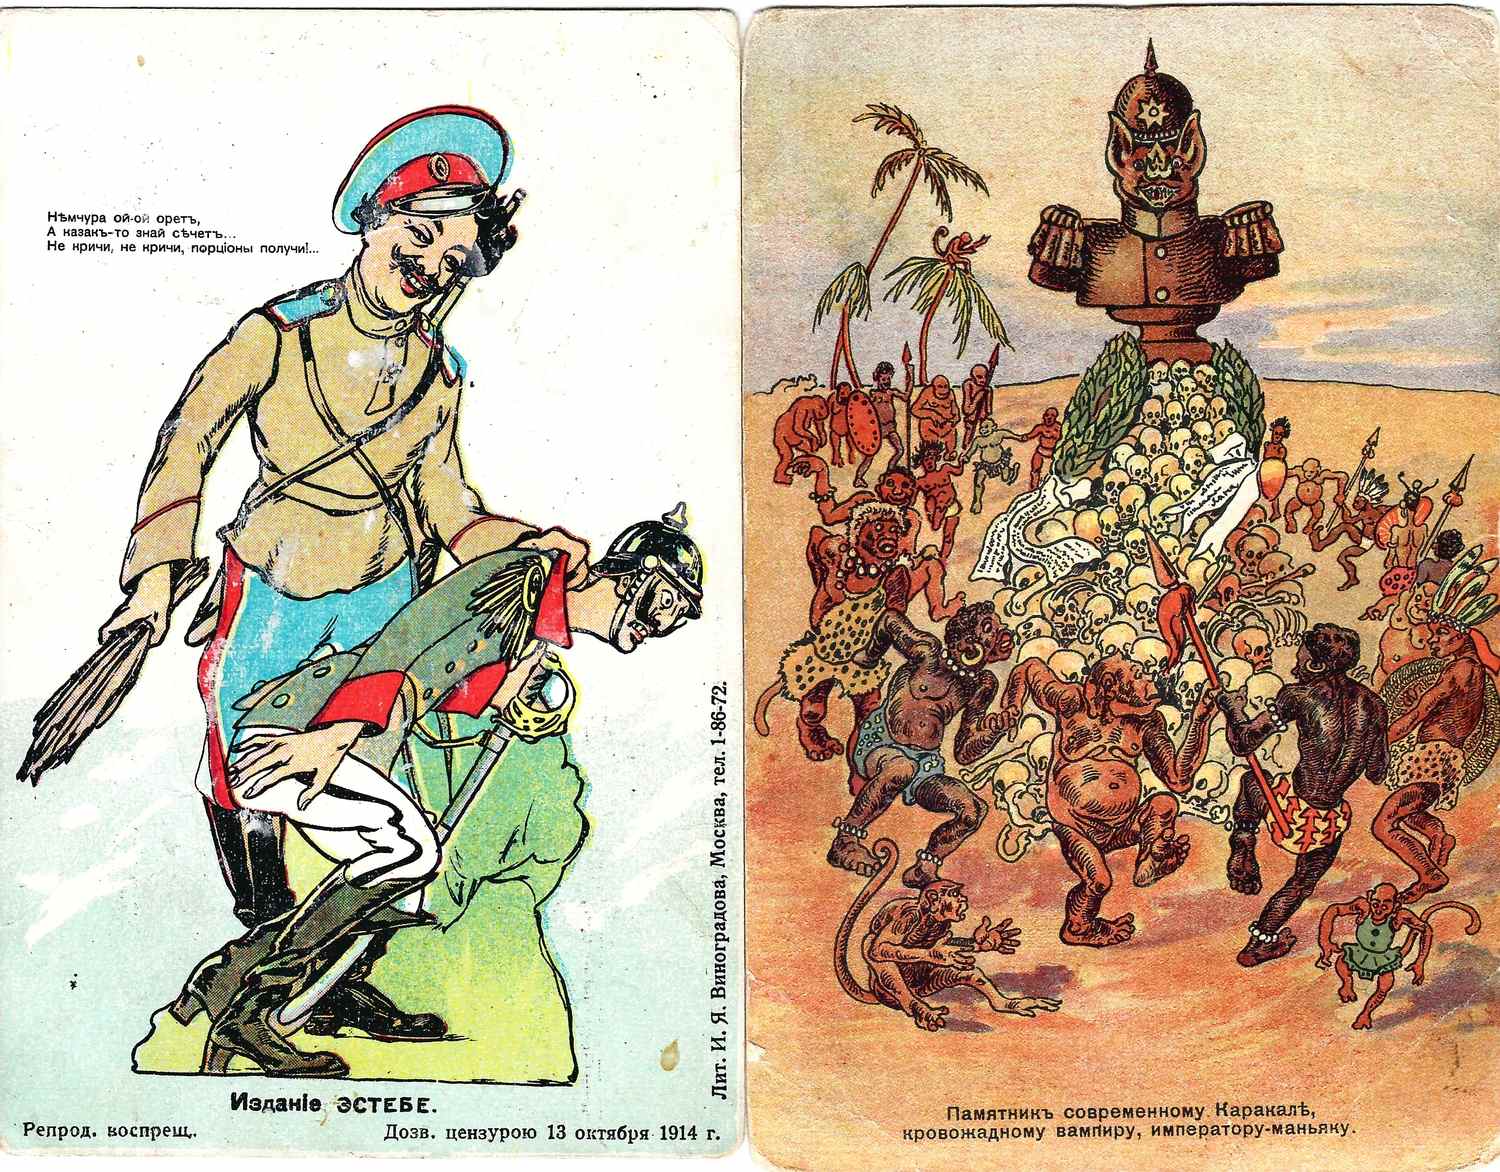 3 агитационные сатирические открытки периода Первой мировой войны. Россия, 1910-е годы.